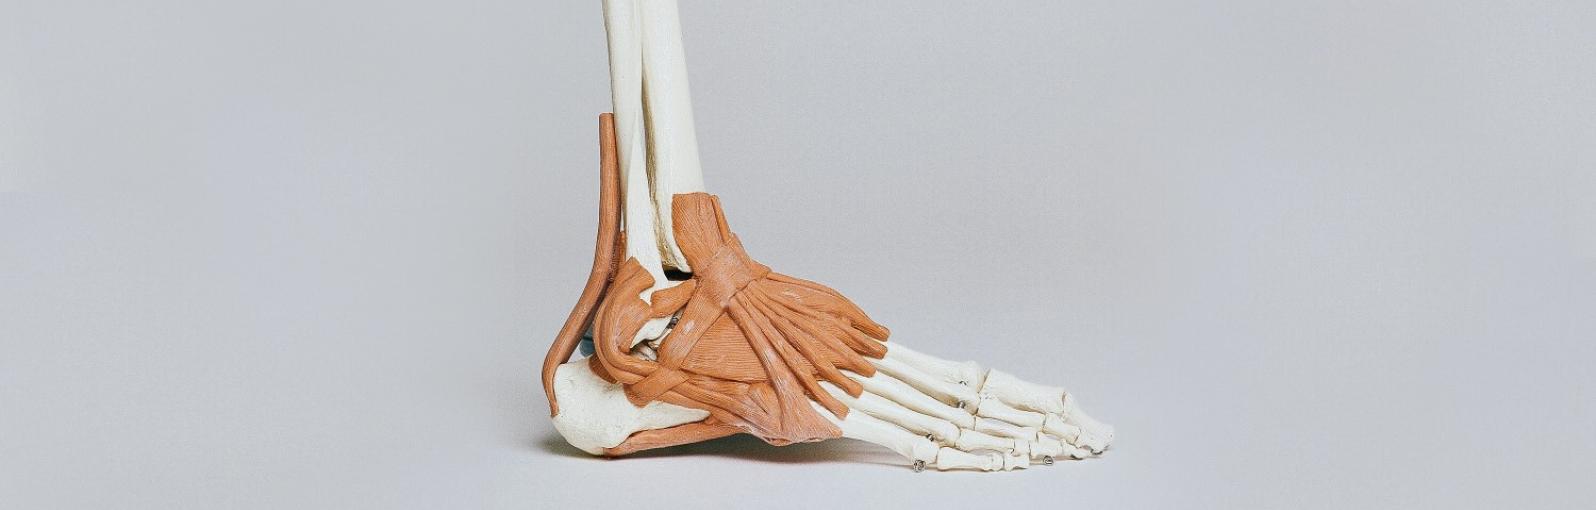 A model of a foot